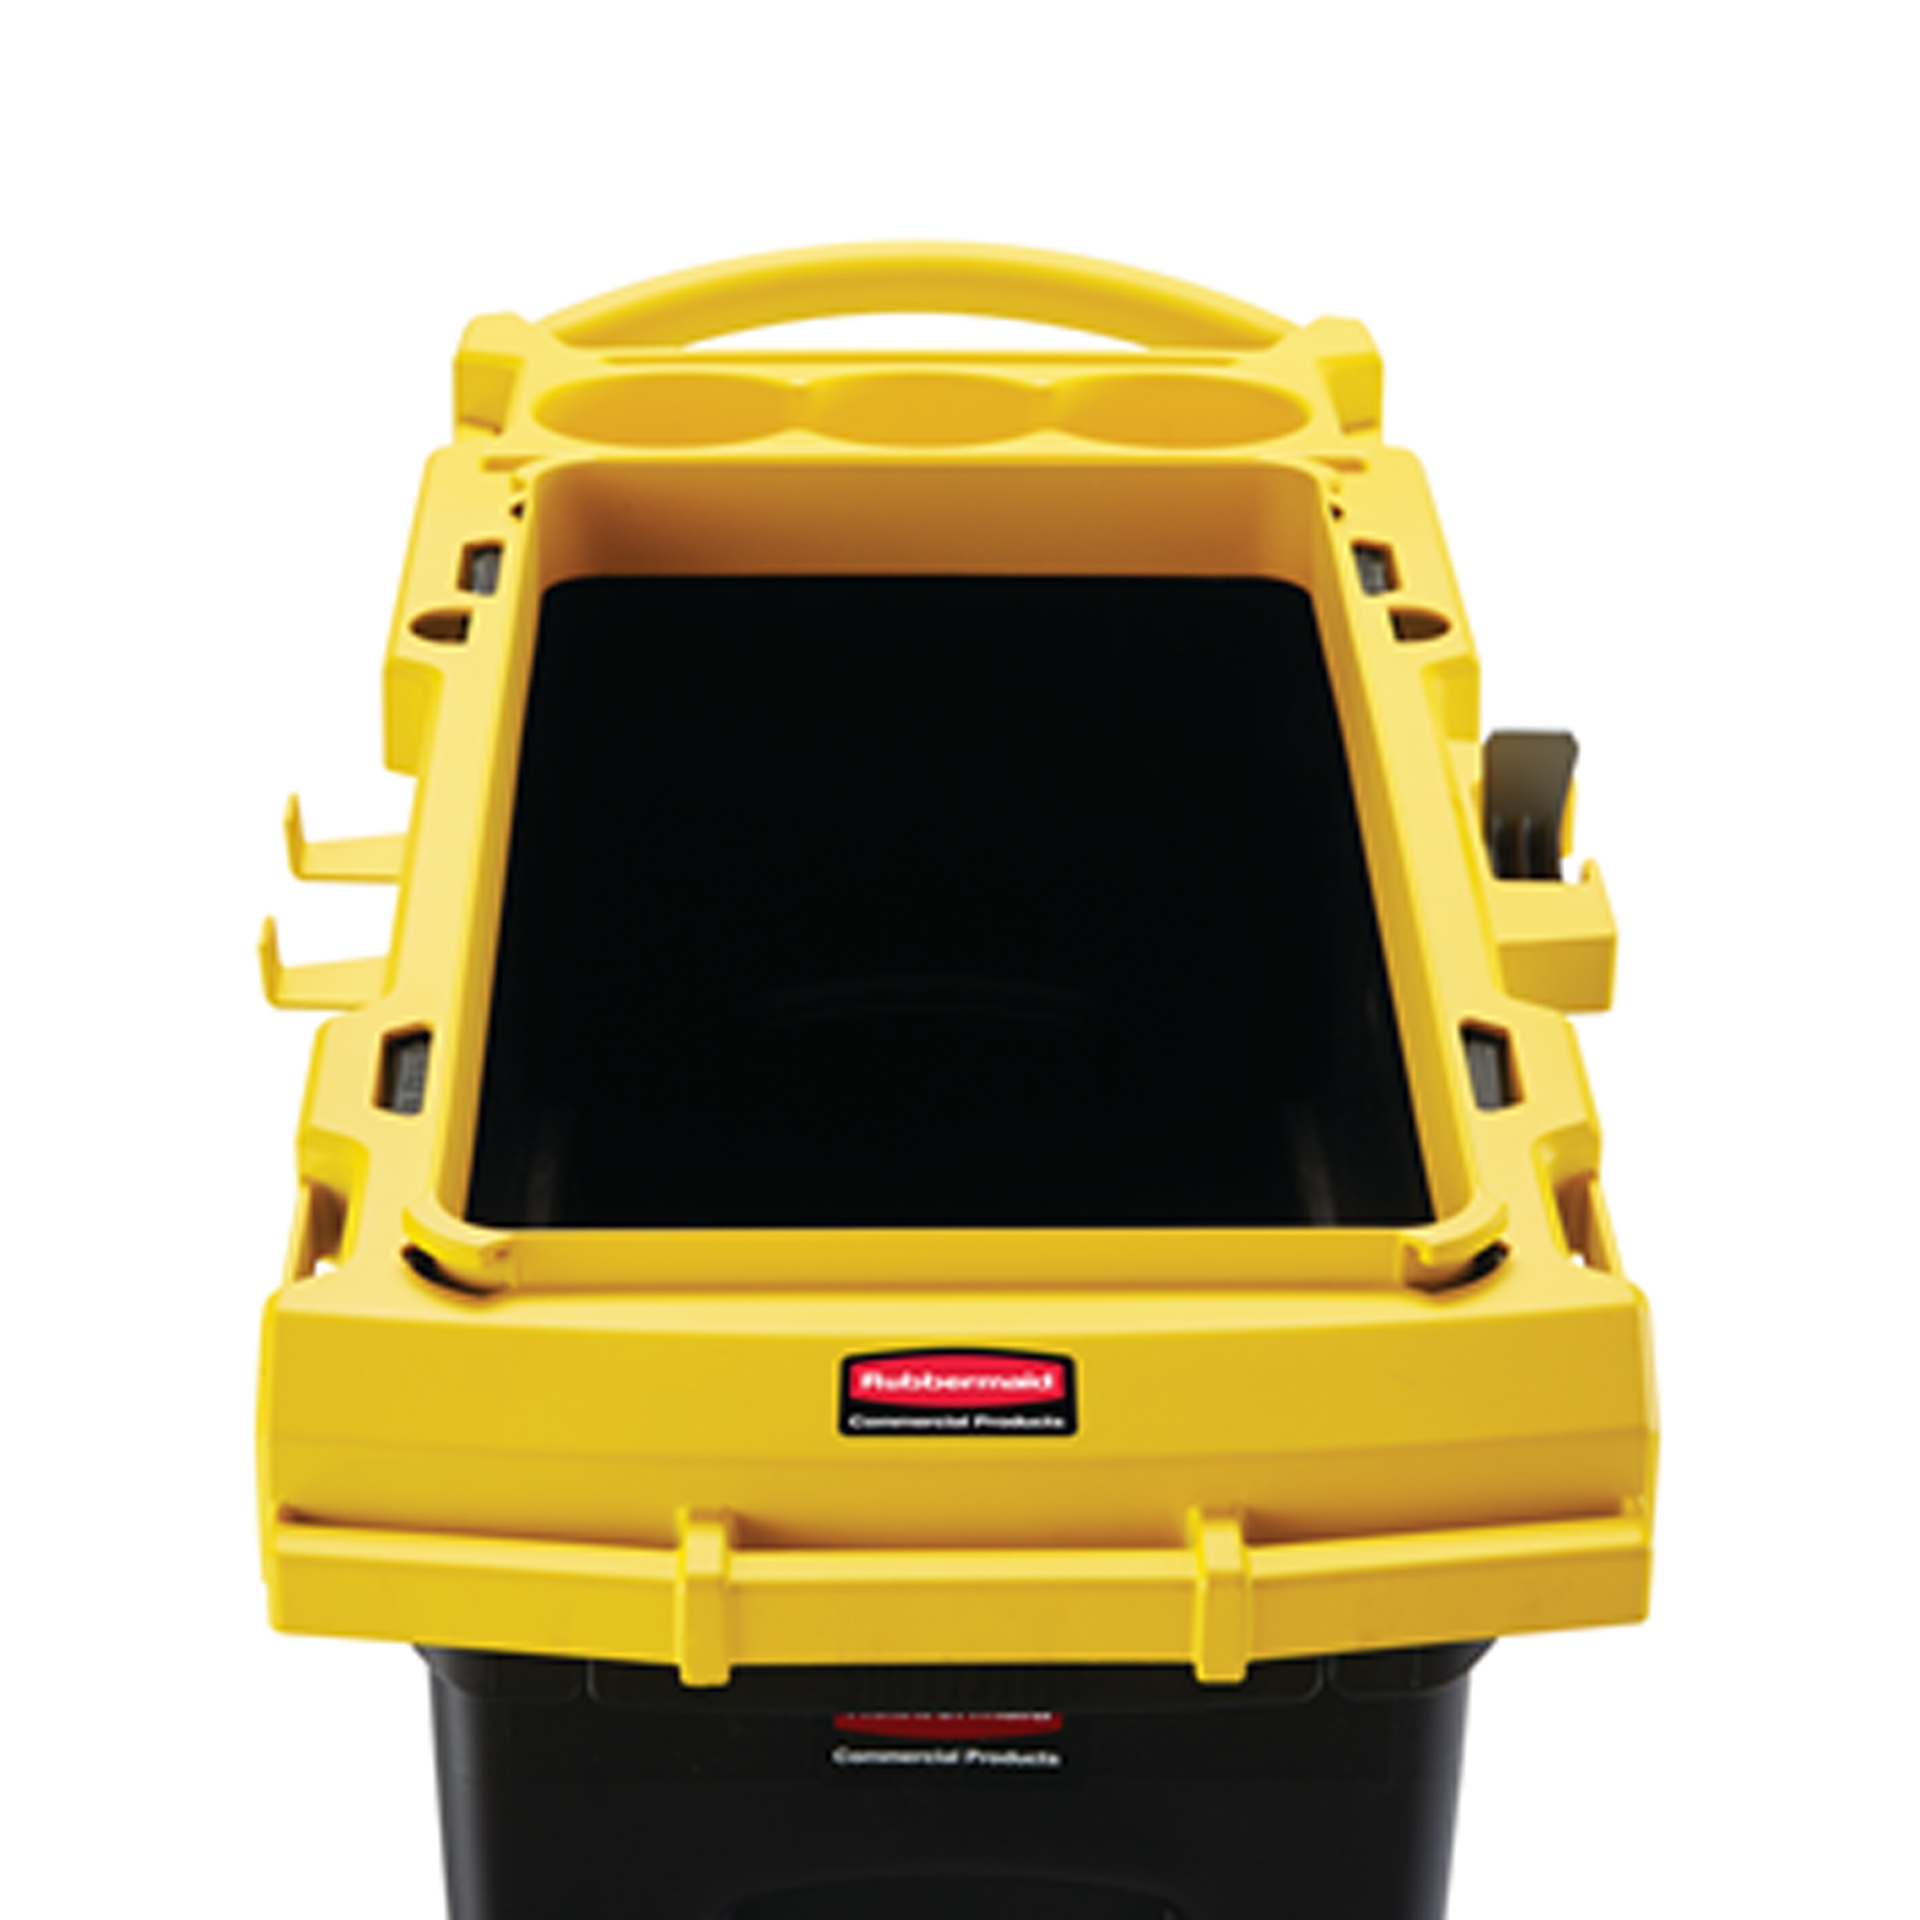 ชุดรถเข็นทำความสะอาดแบบถังเดียว Slim Jim® Single-Stream Cleaning Cart สีเหลือง